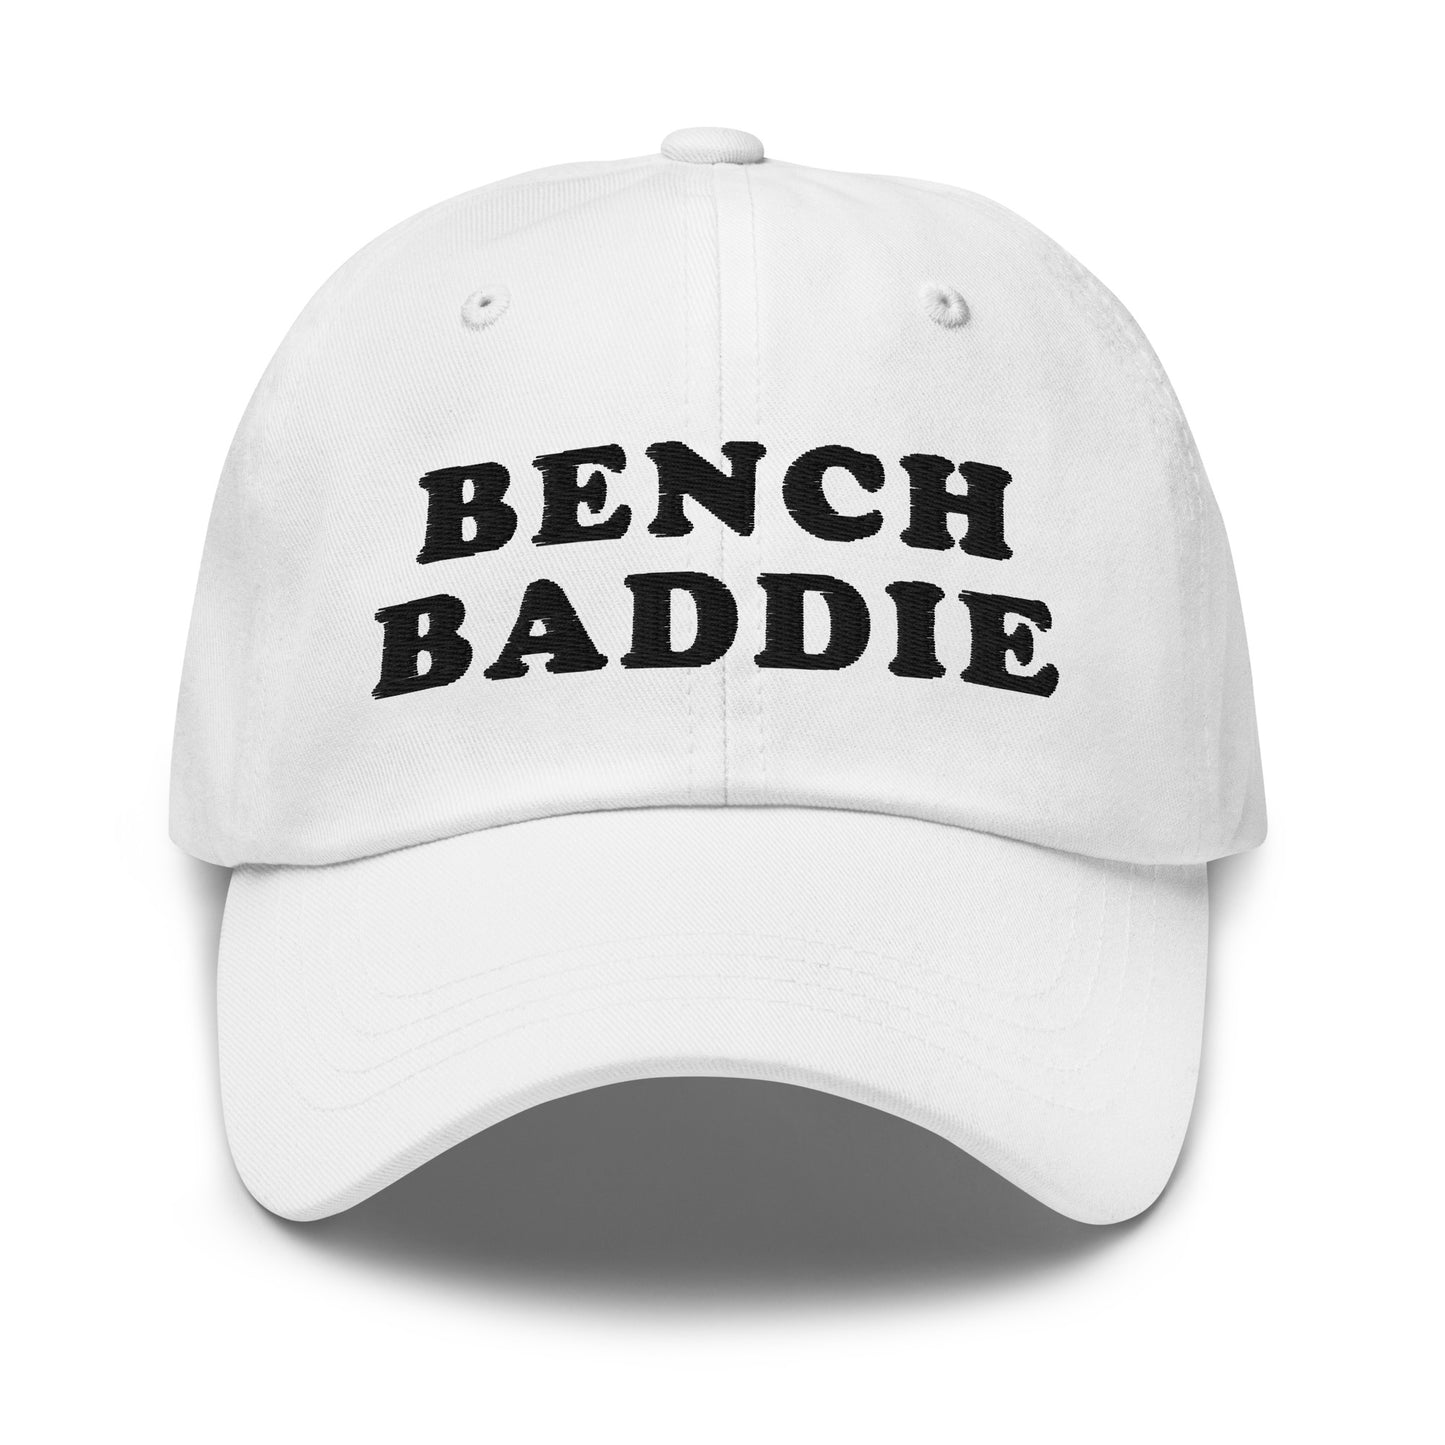 Bench Baddie hat